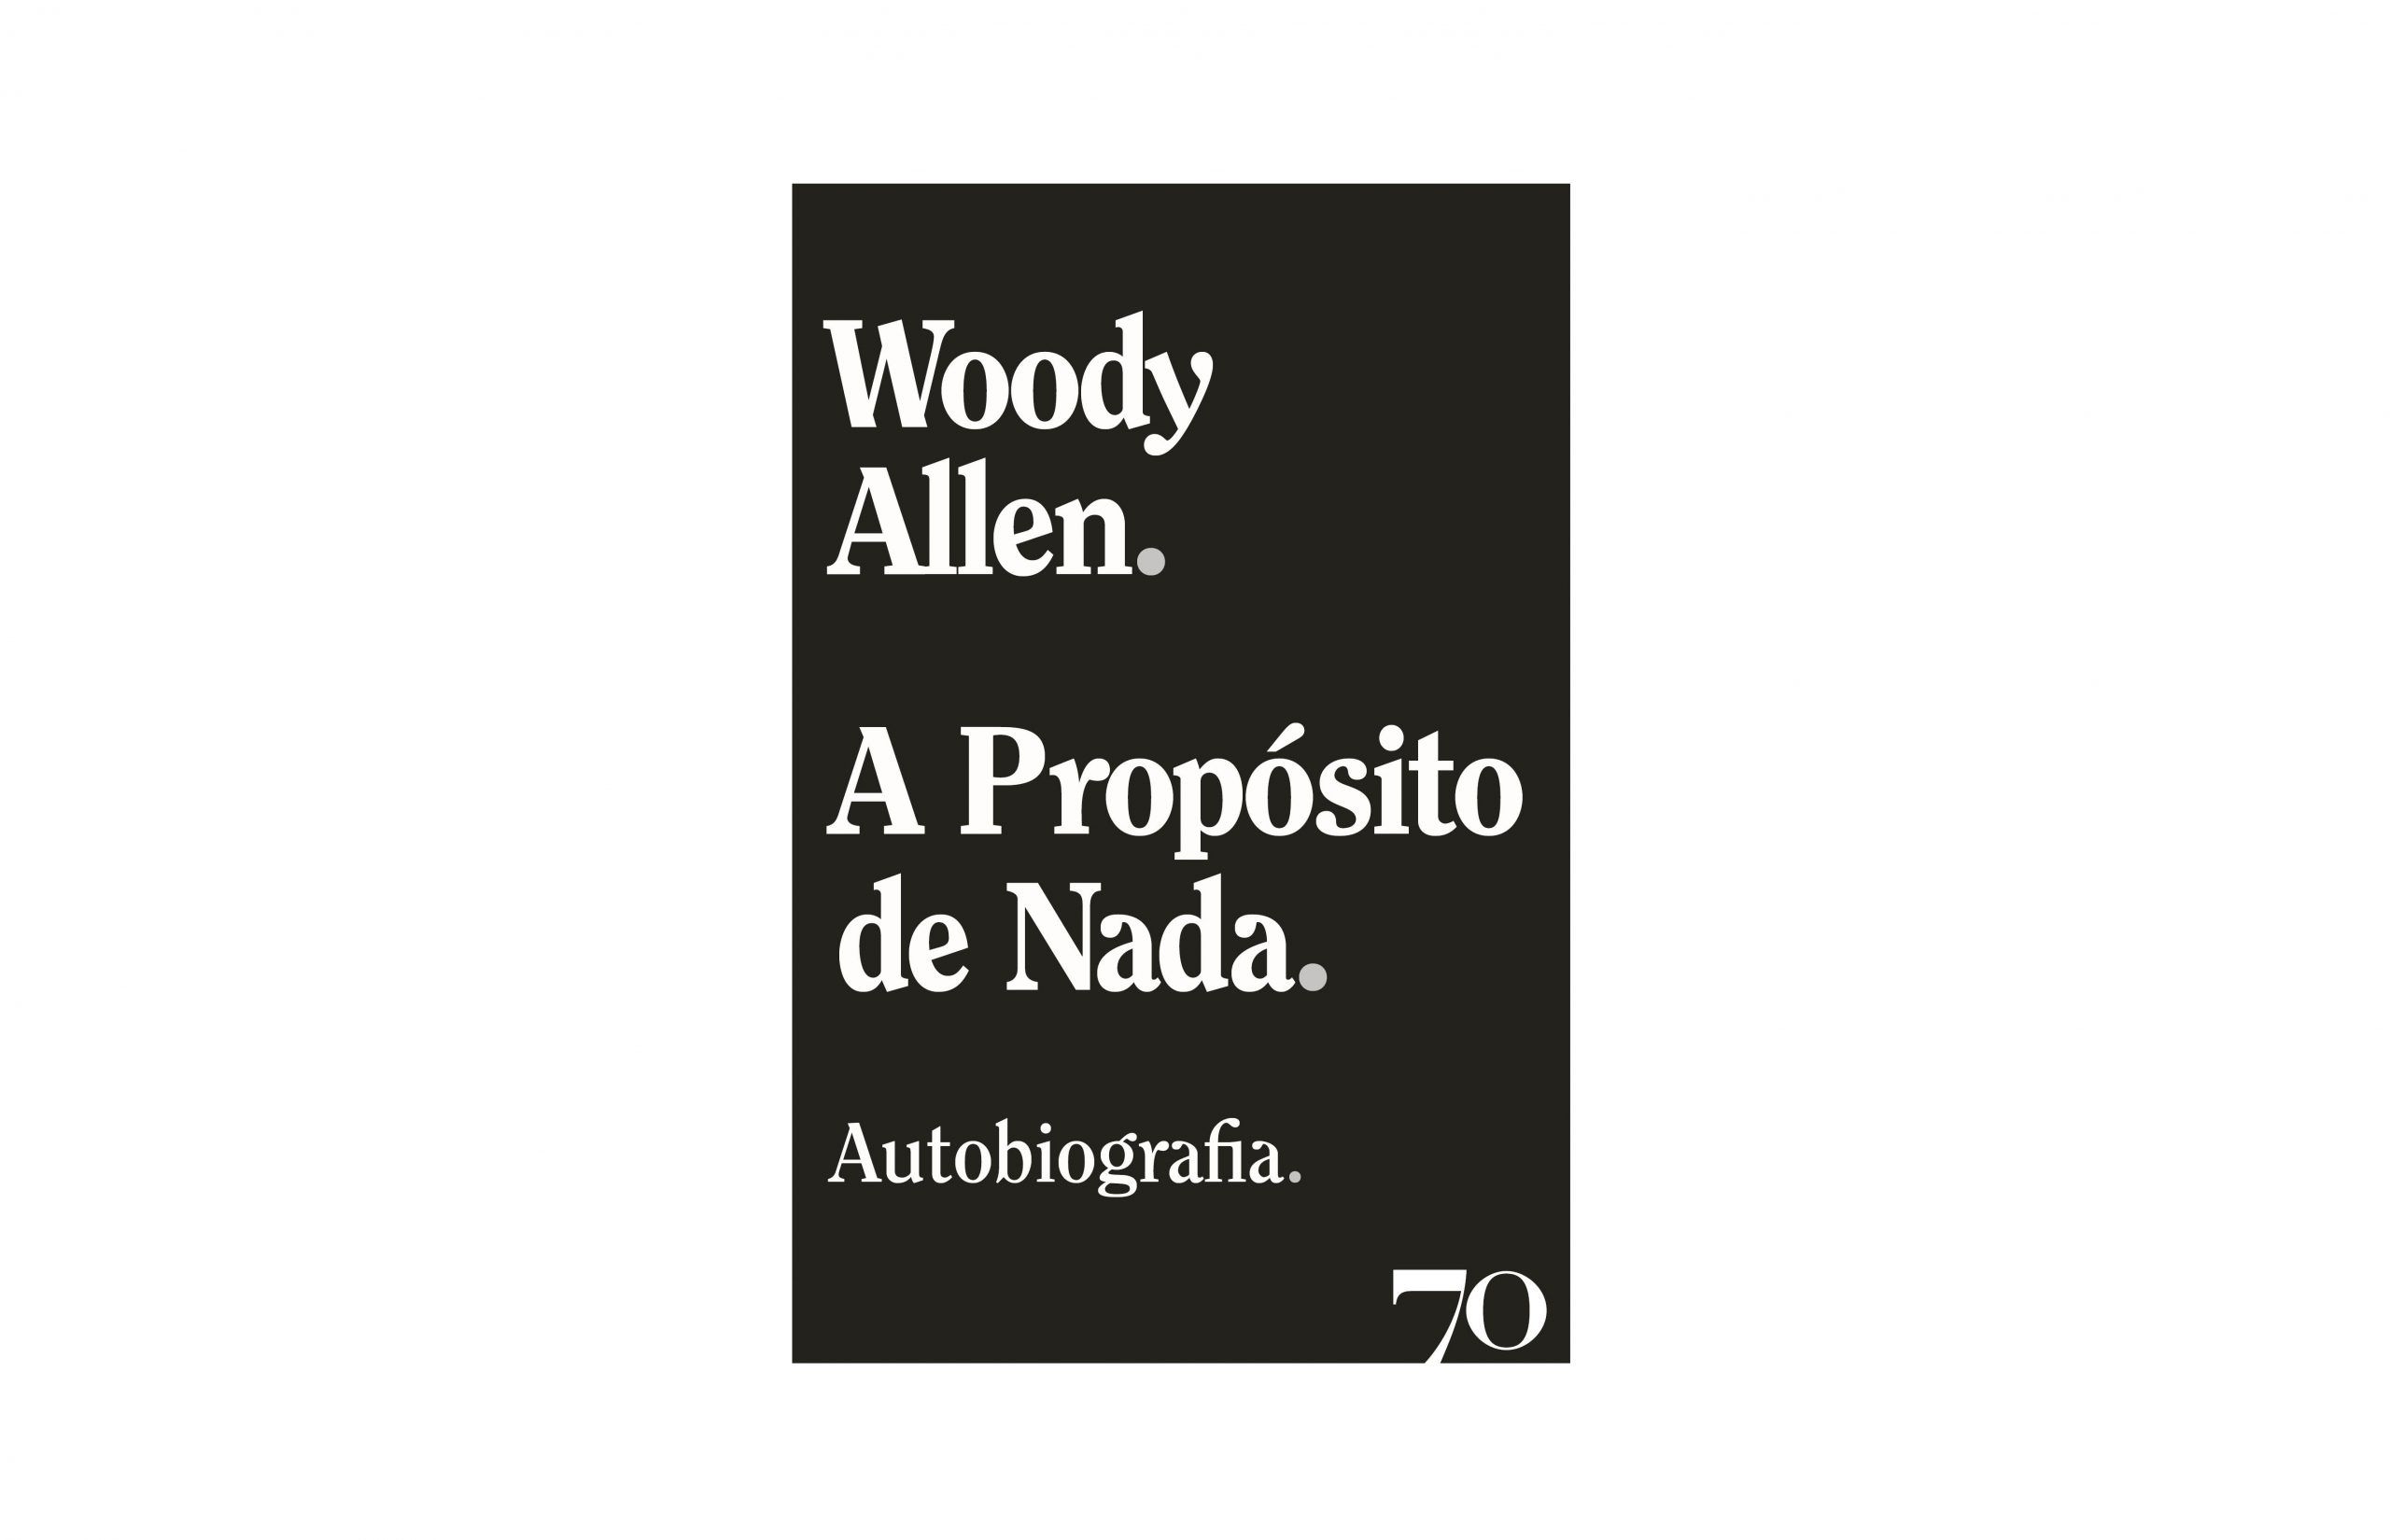 “A Propósito de Nada”. Autobiografia de Woody Allen chega às livrarias portuguesas em Julho